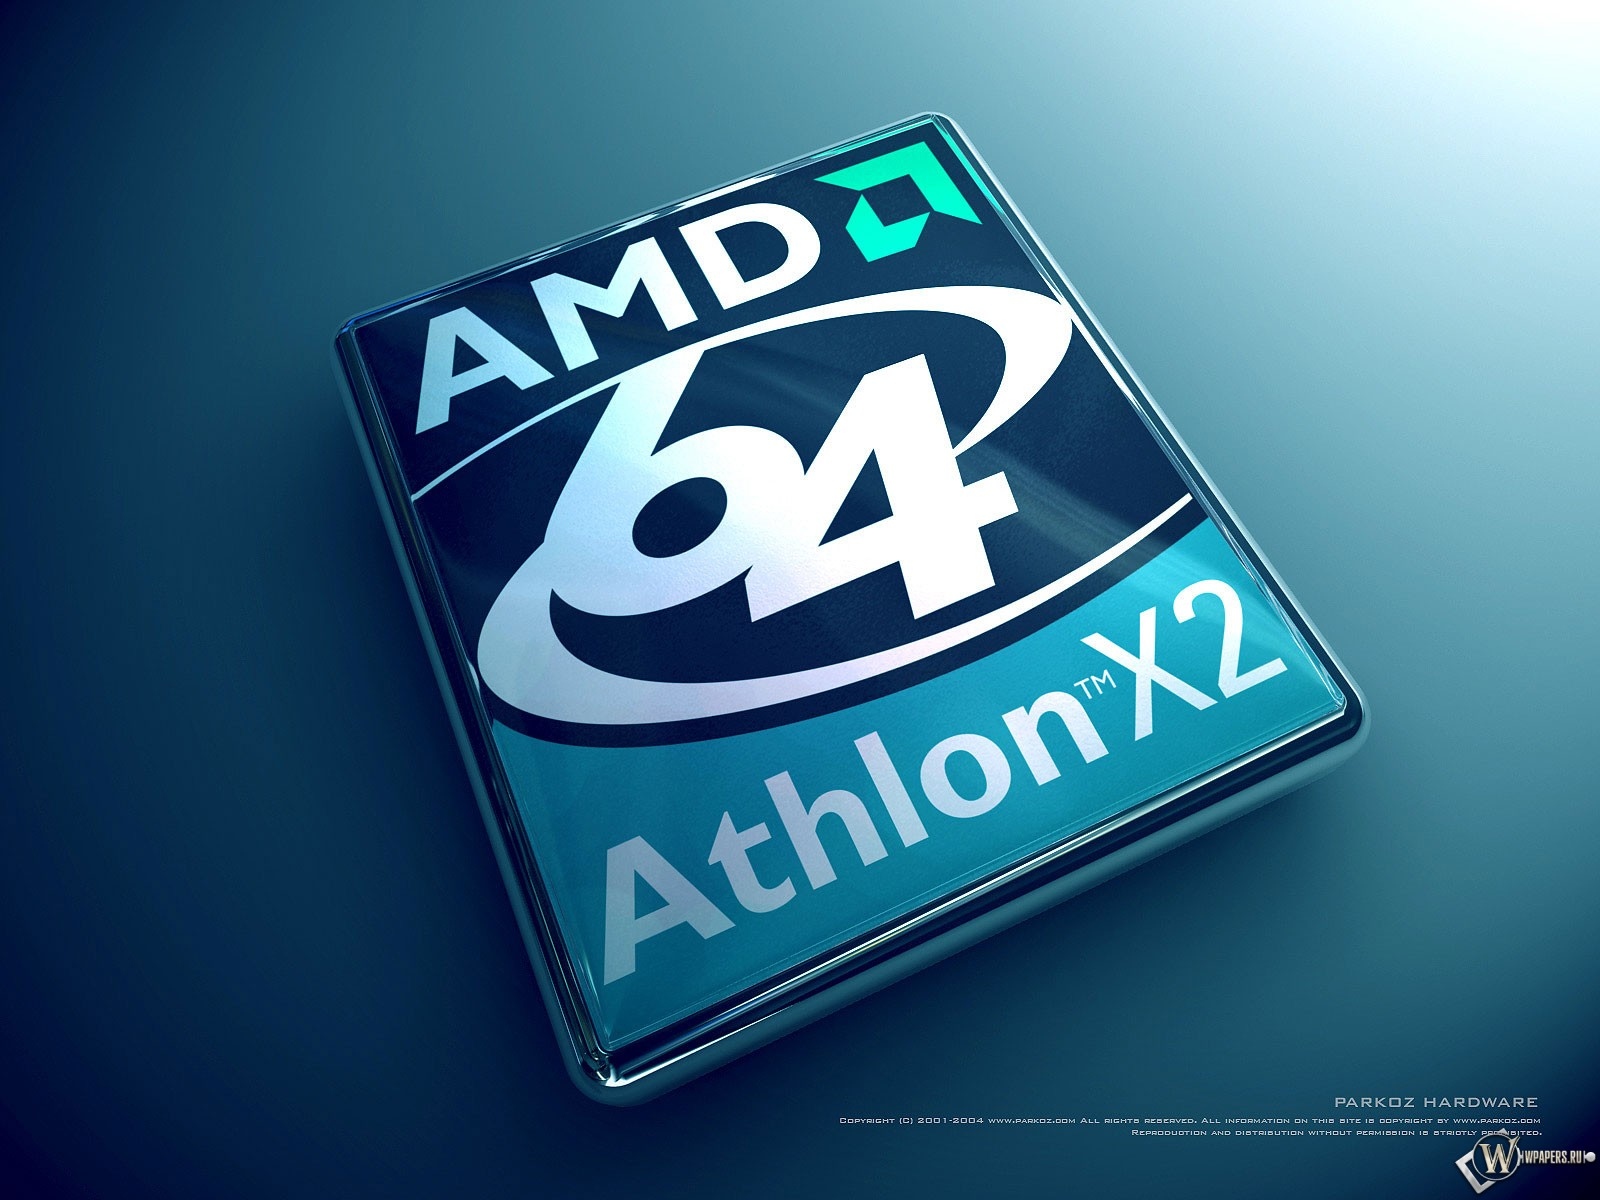 Athlon X2 1600x1200